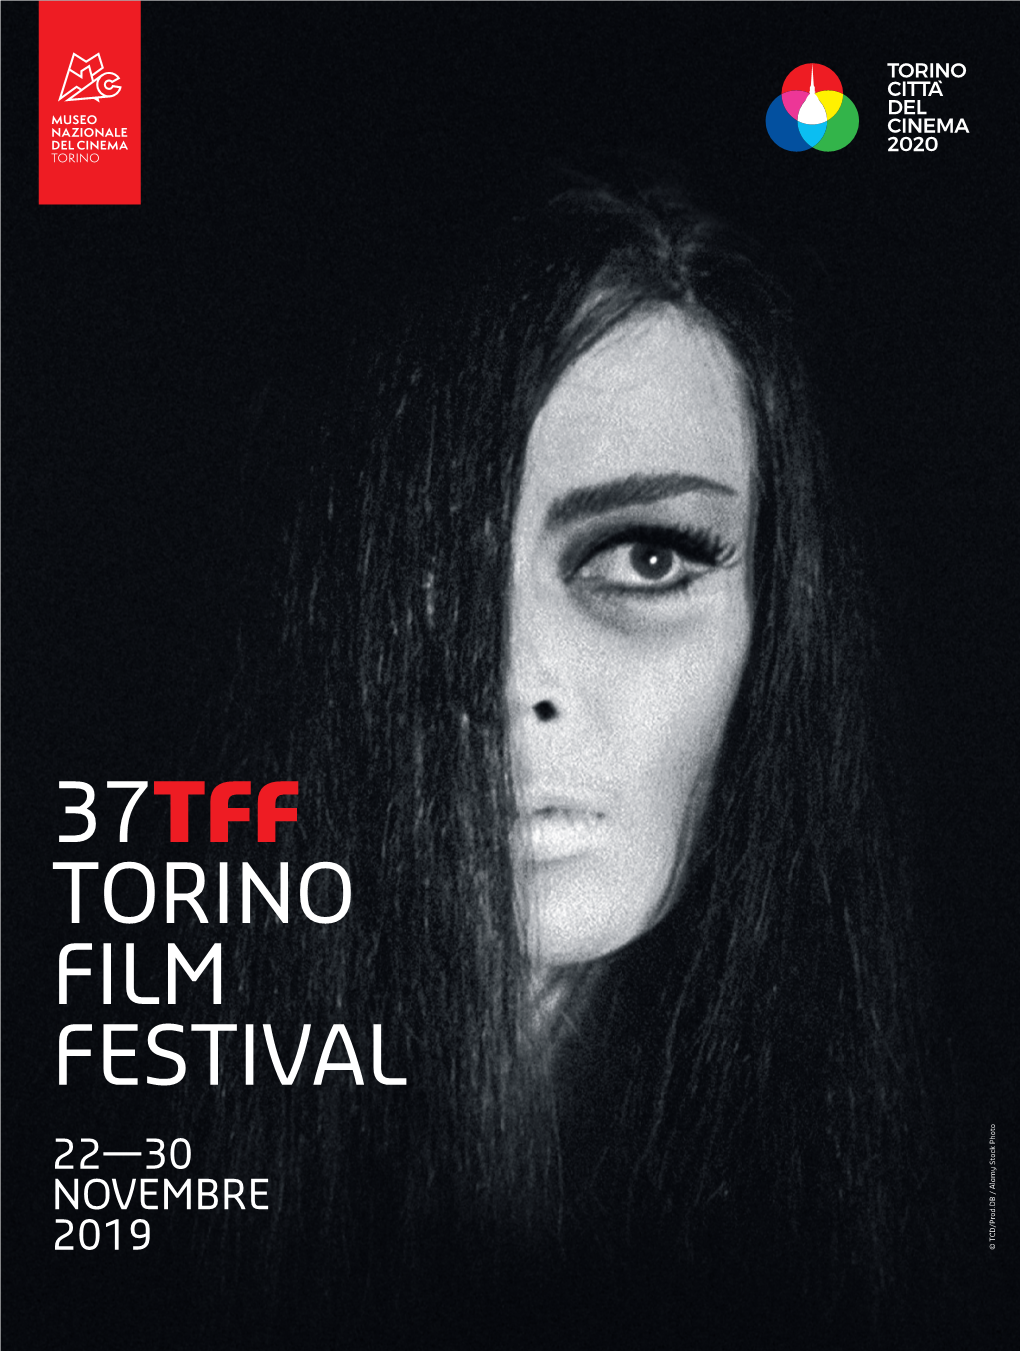 37Tff Torino Film Festival 22—30 Novembre